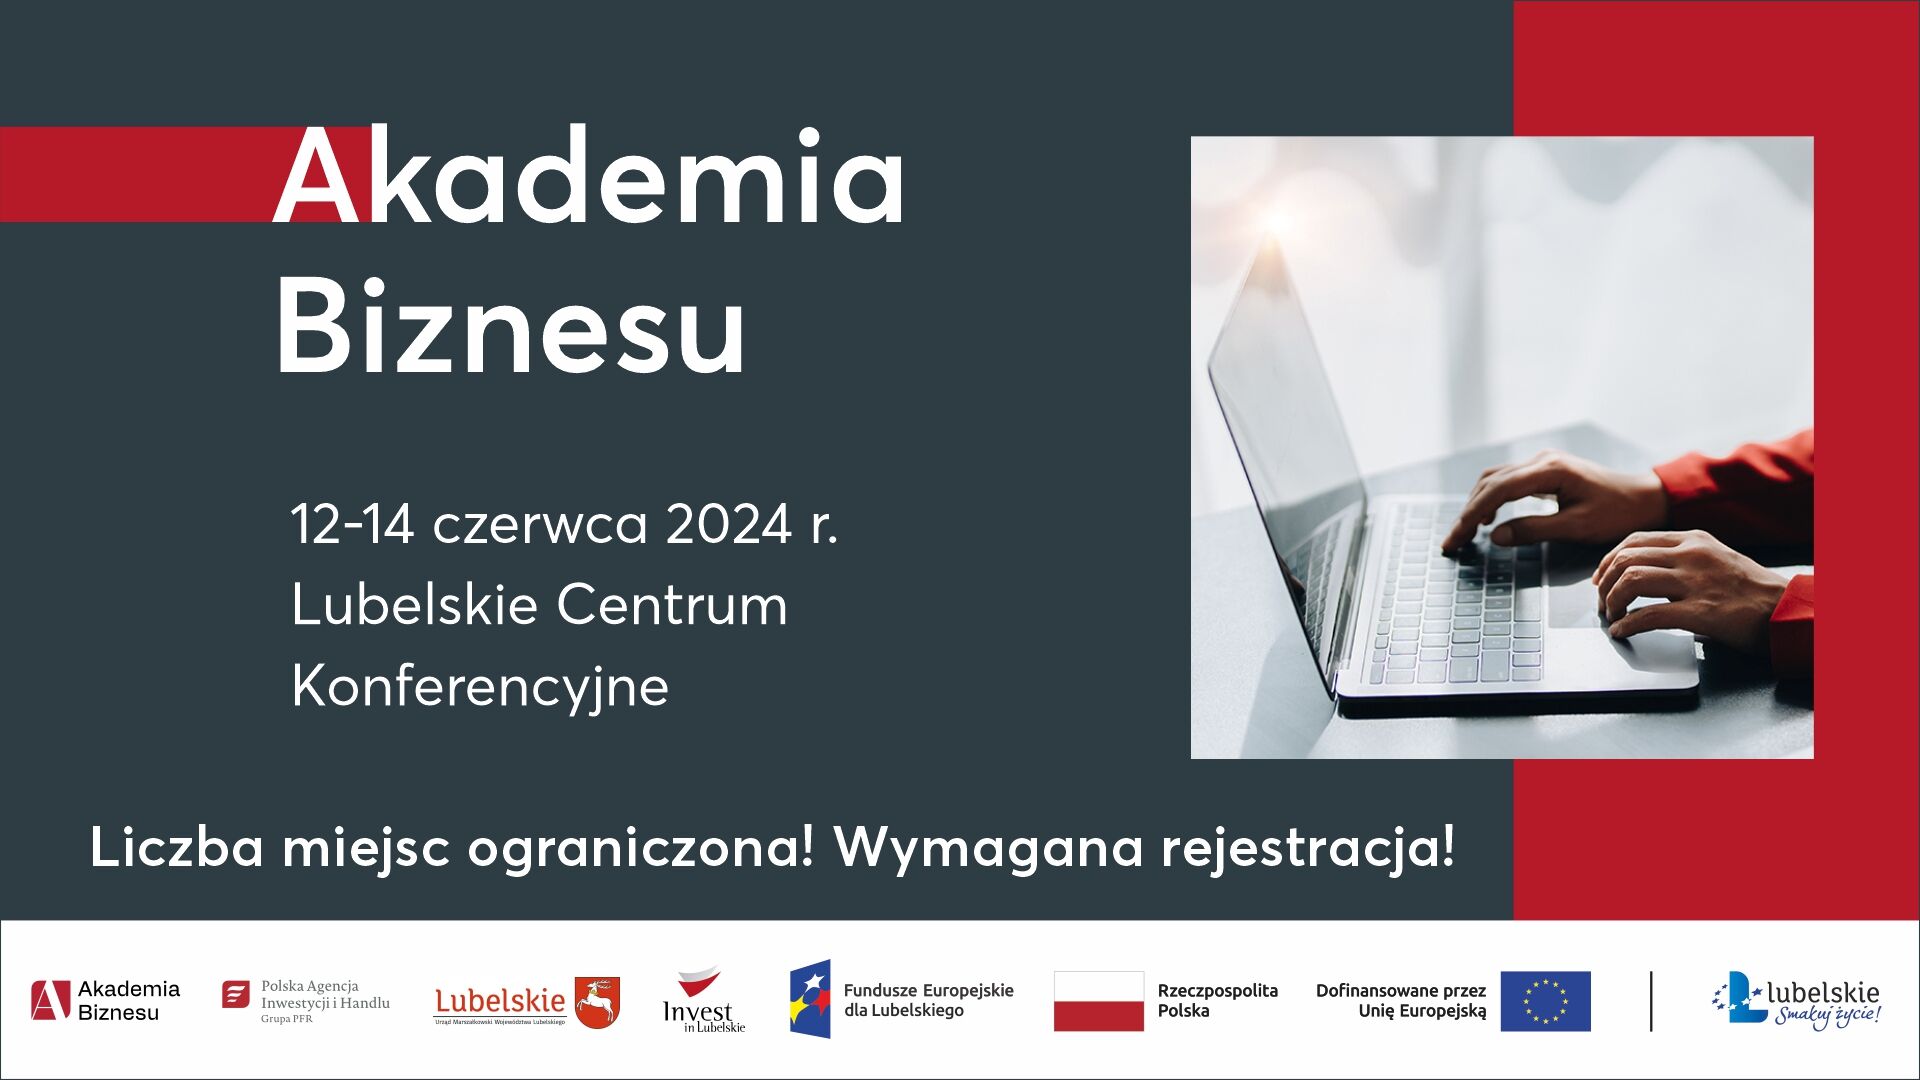 Plakat konferencji "Akademia Biznesu" z datą i miejscem wydarzenia, zdjęciem rąk na klawiaturze laptopa i informacją o ograniczonej liczbie miejsc.